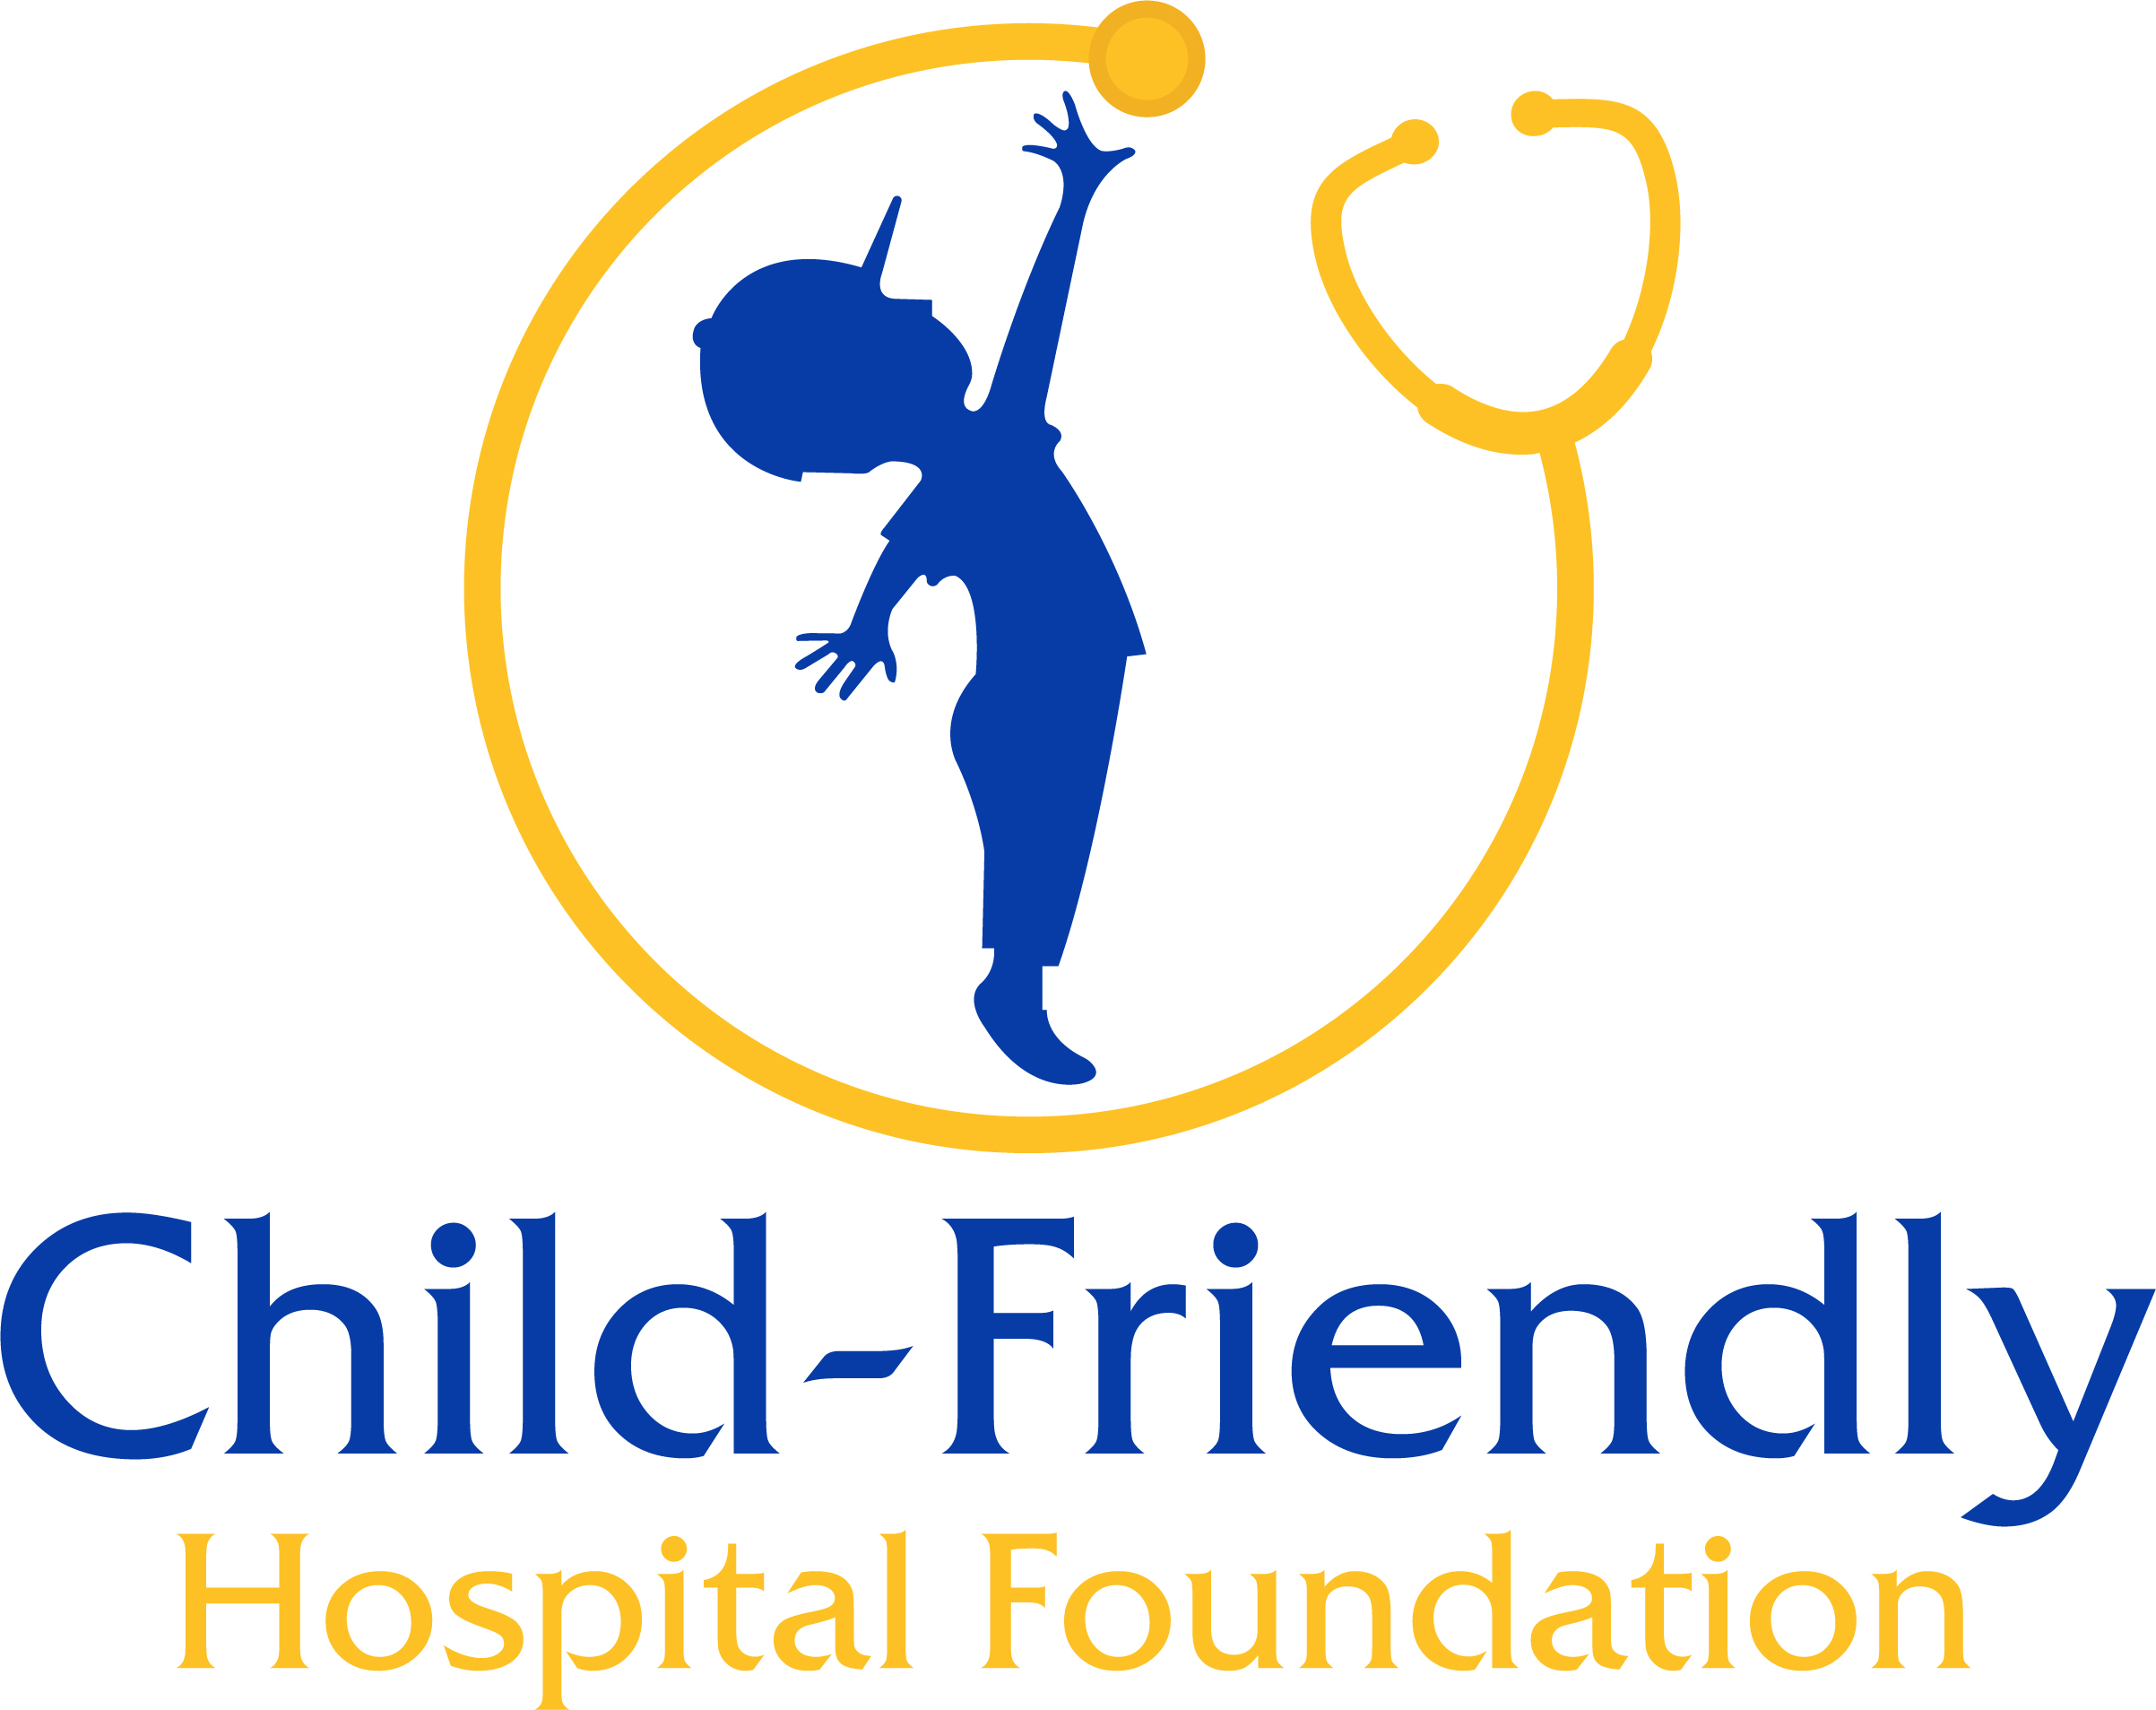 Child-Friendly Hospital Foundation logo